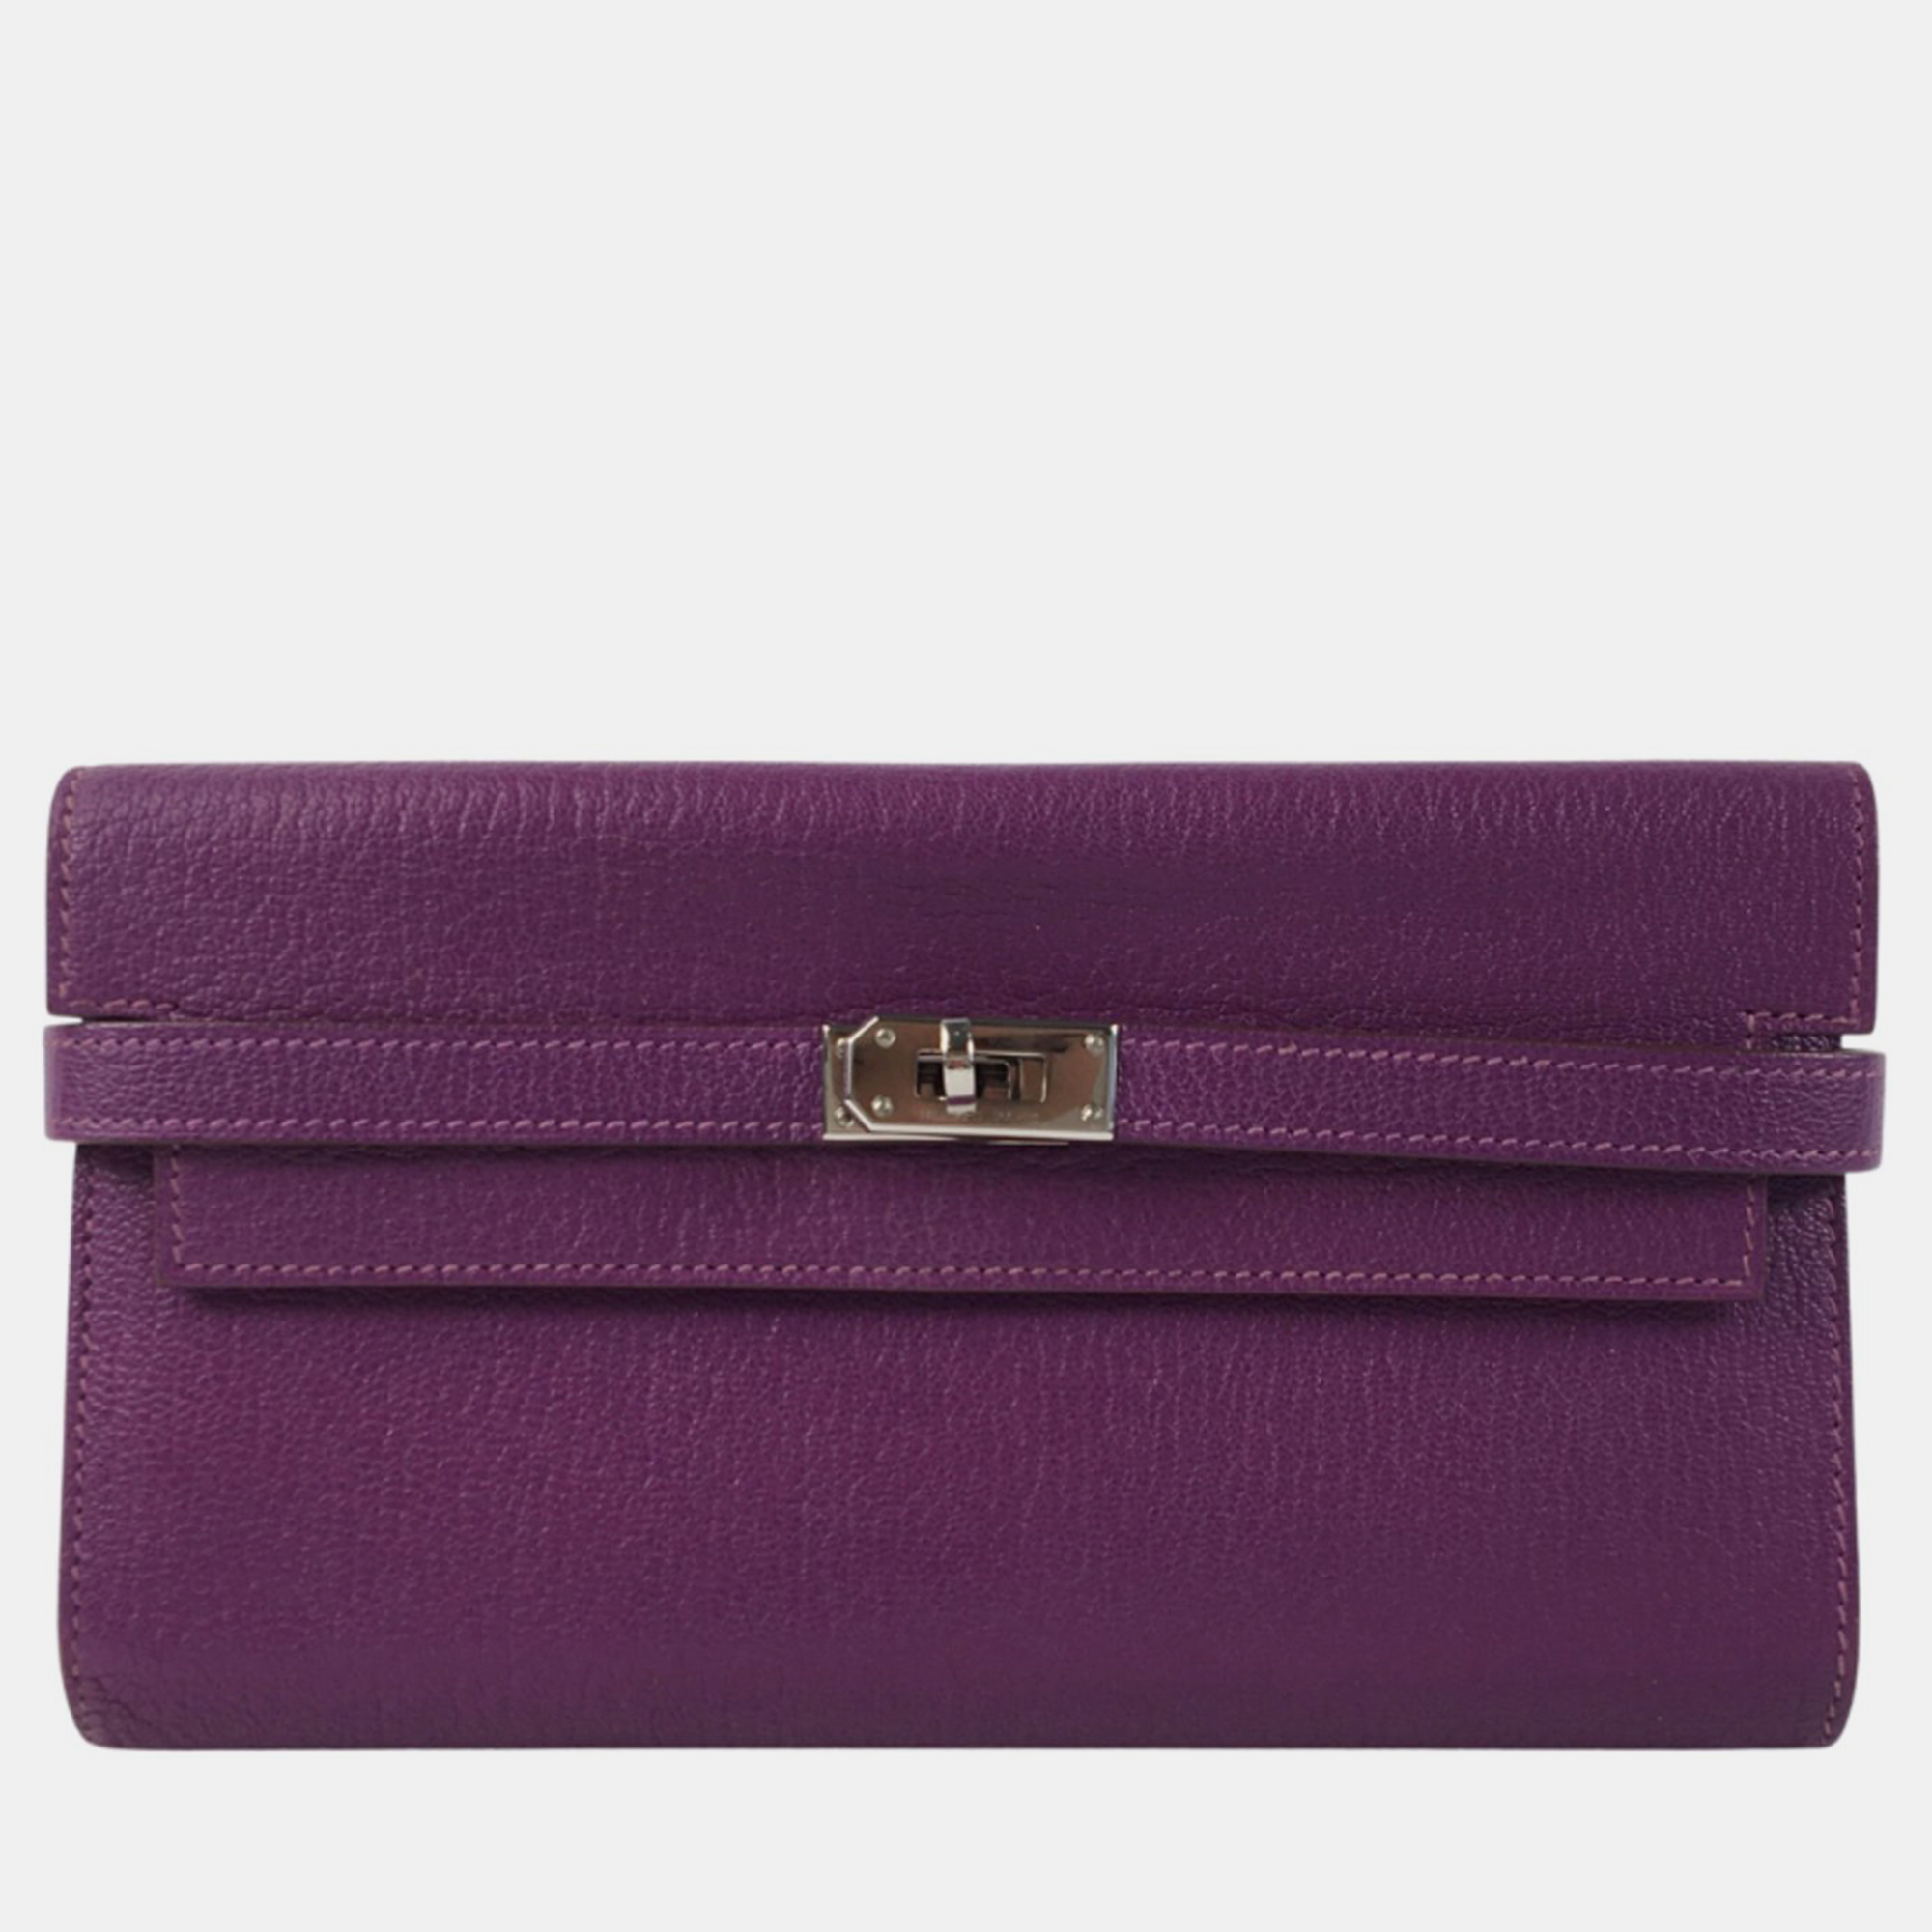 Hermes purple chevre kelly wallet